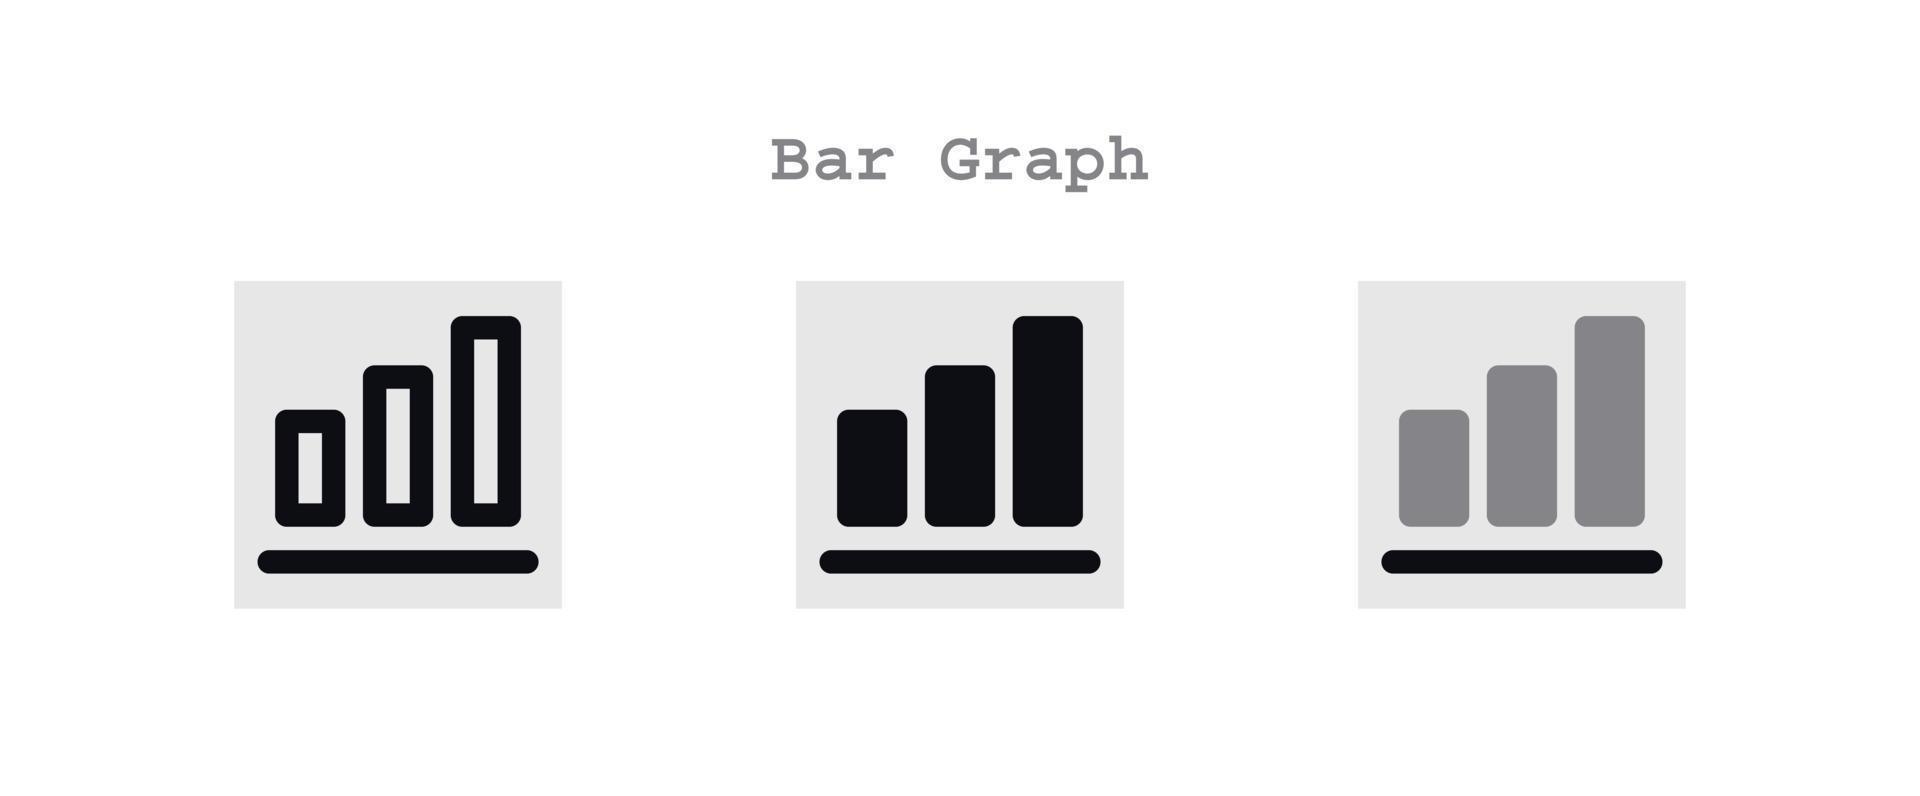 bar graph icon set vector